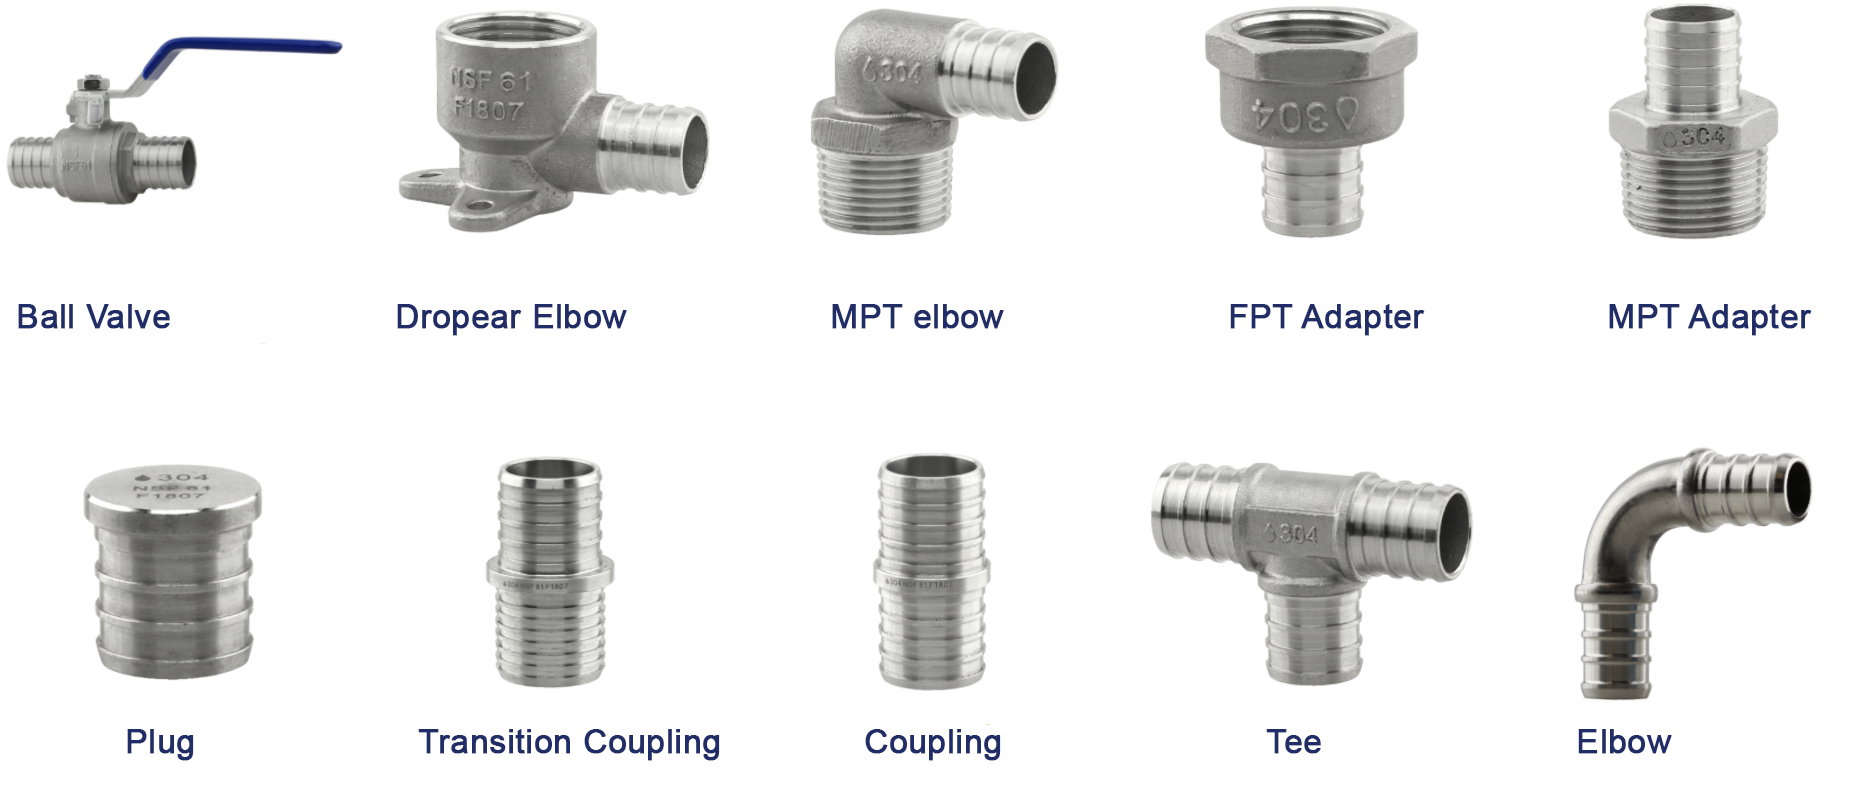 Les différents matériaux disponibles pour la tuyauterie.